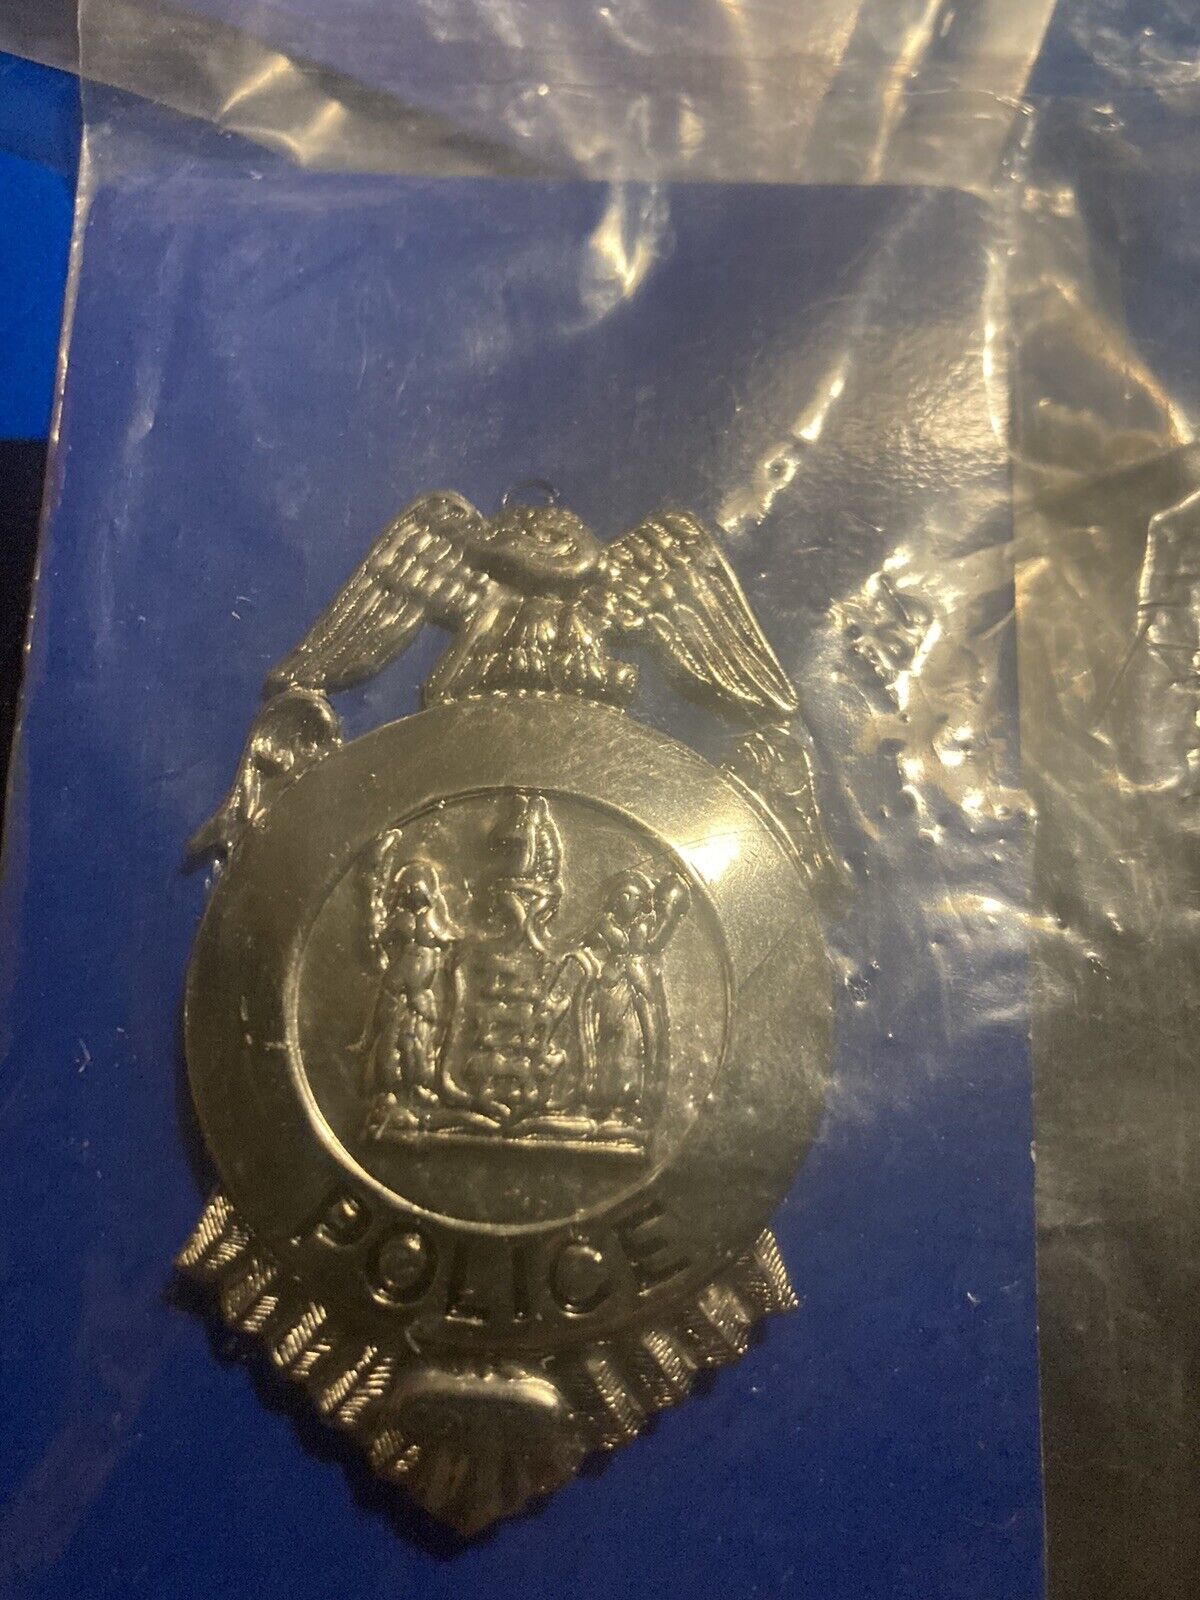 Vintage Obsolete 1940’s Police Officer Badge Vintage Find Metal Pin